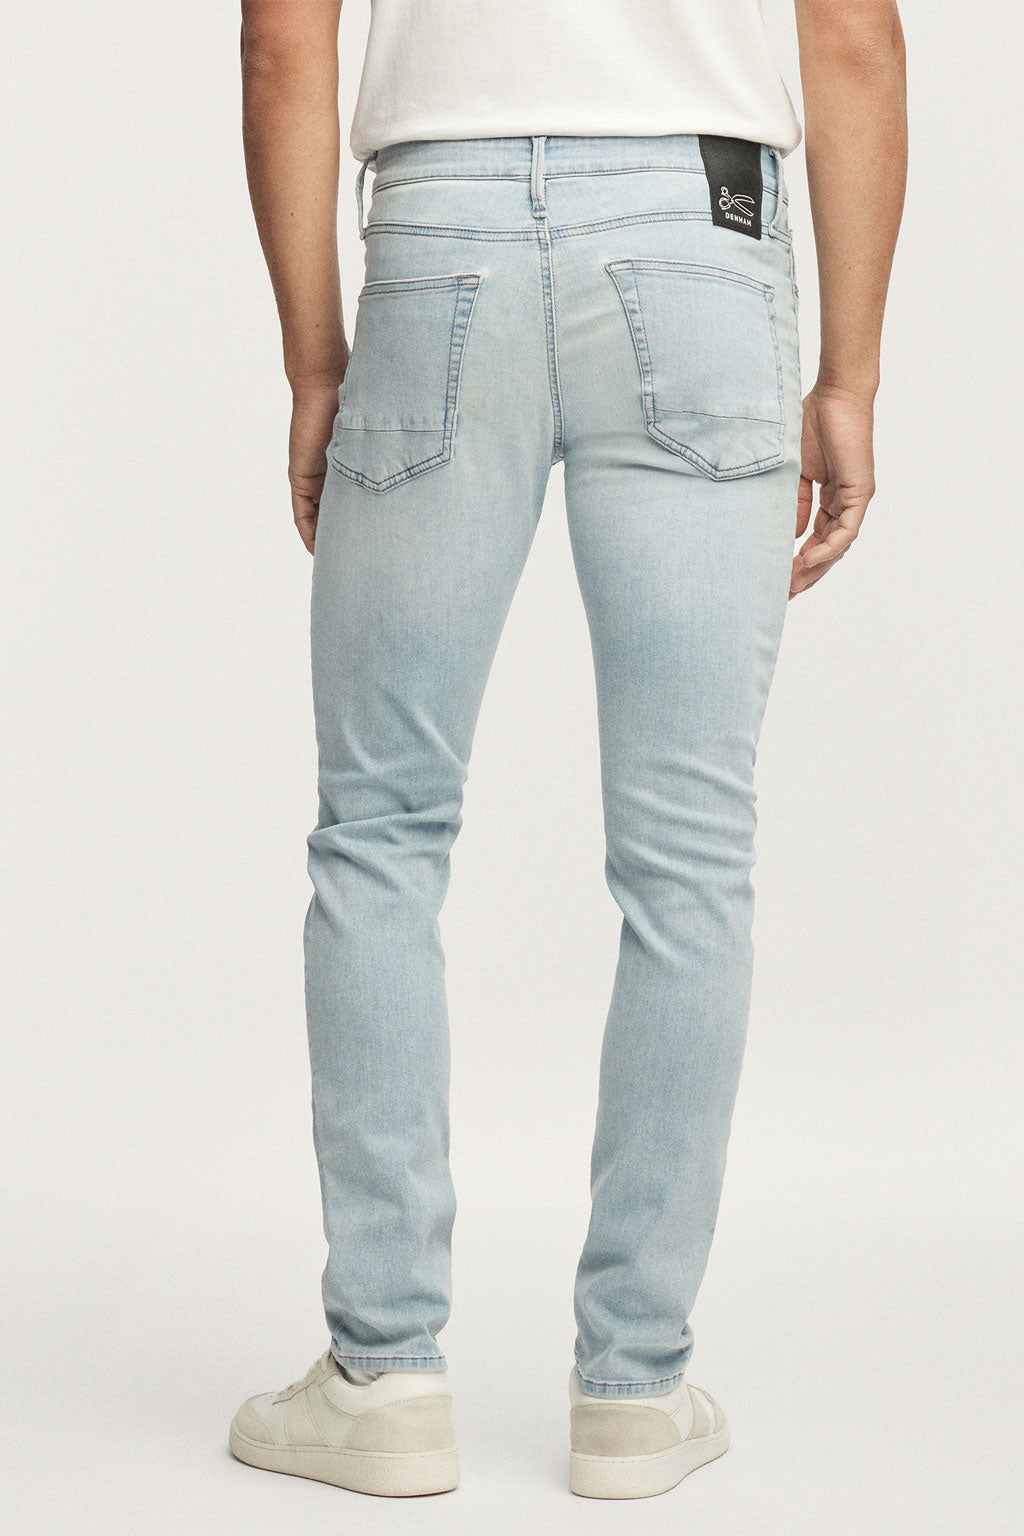 Denham jeans